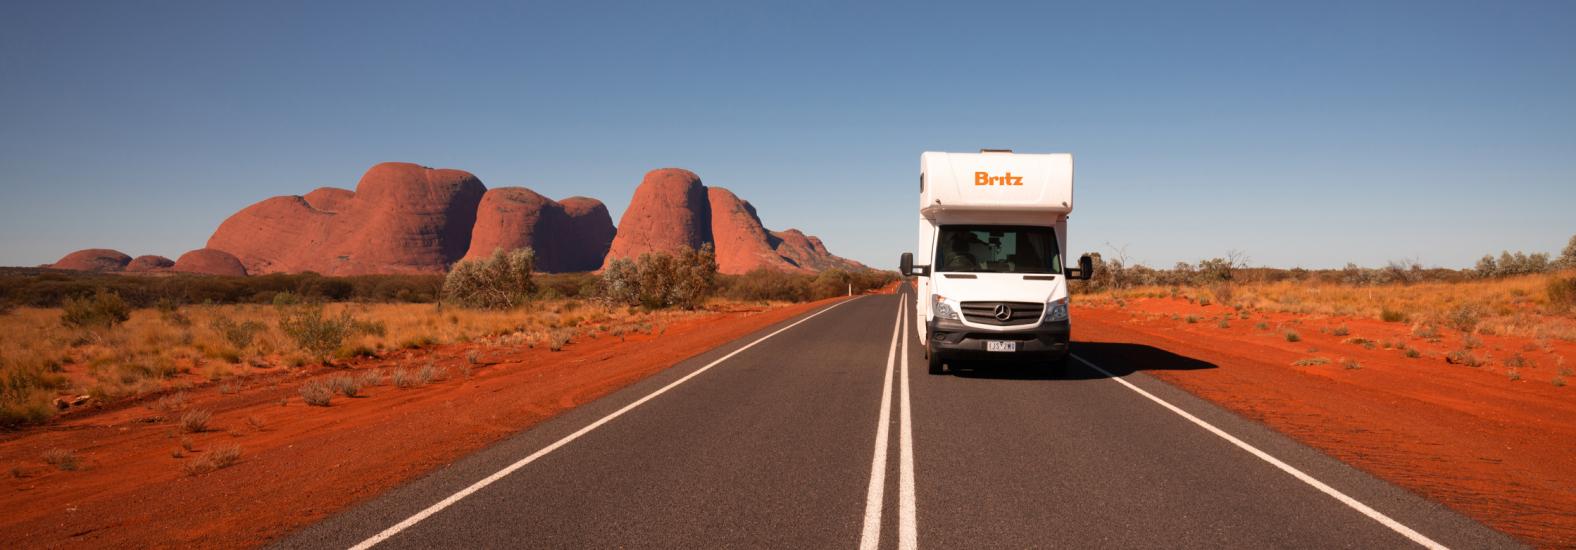 Britz Motorhome auf einer Straße im australischen Outback